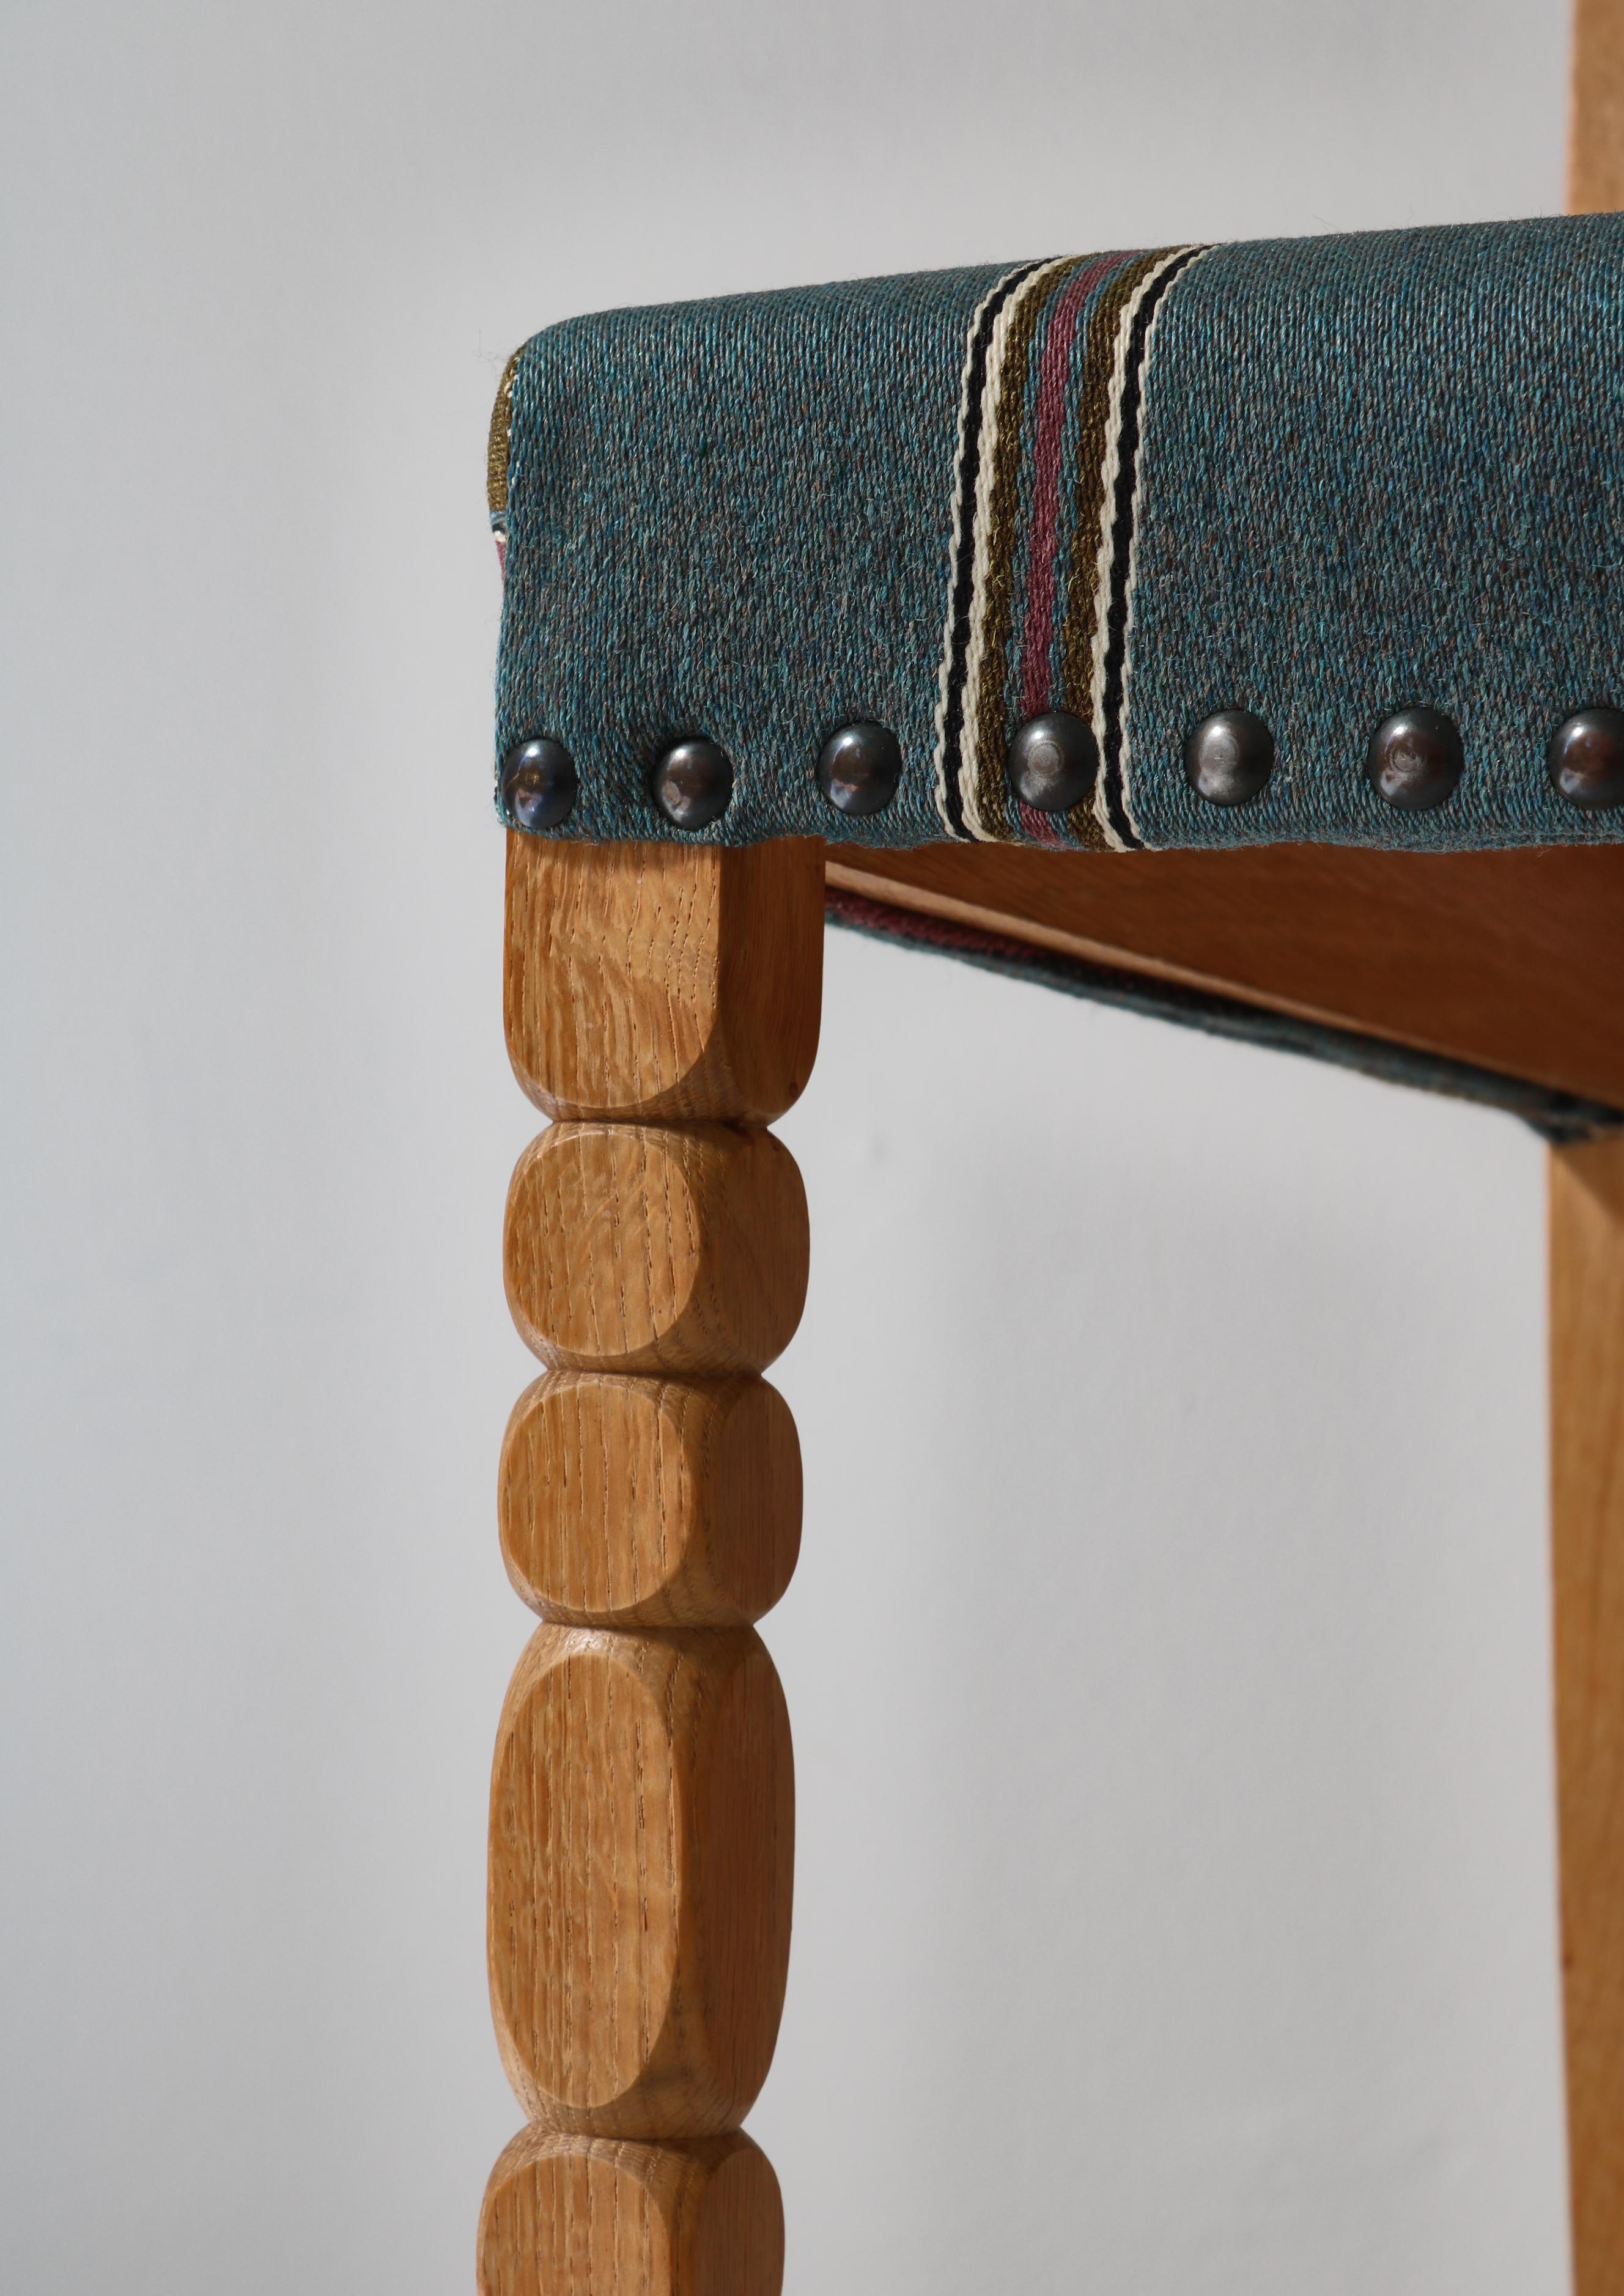 1960s Side Chair in Oak & Wool Fabric by Henry Kjærnulf, Danish Modern For Sale 5